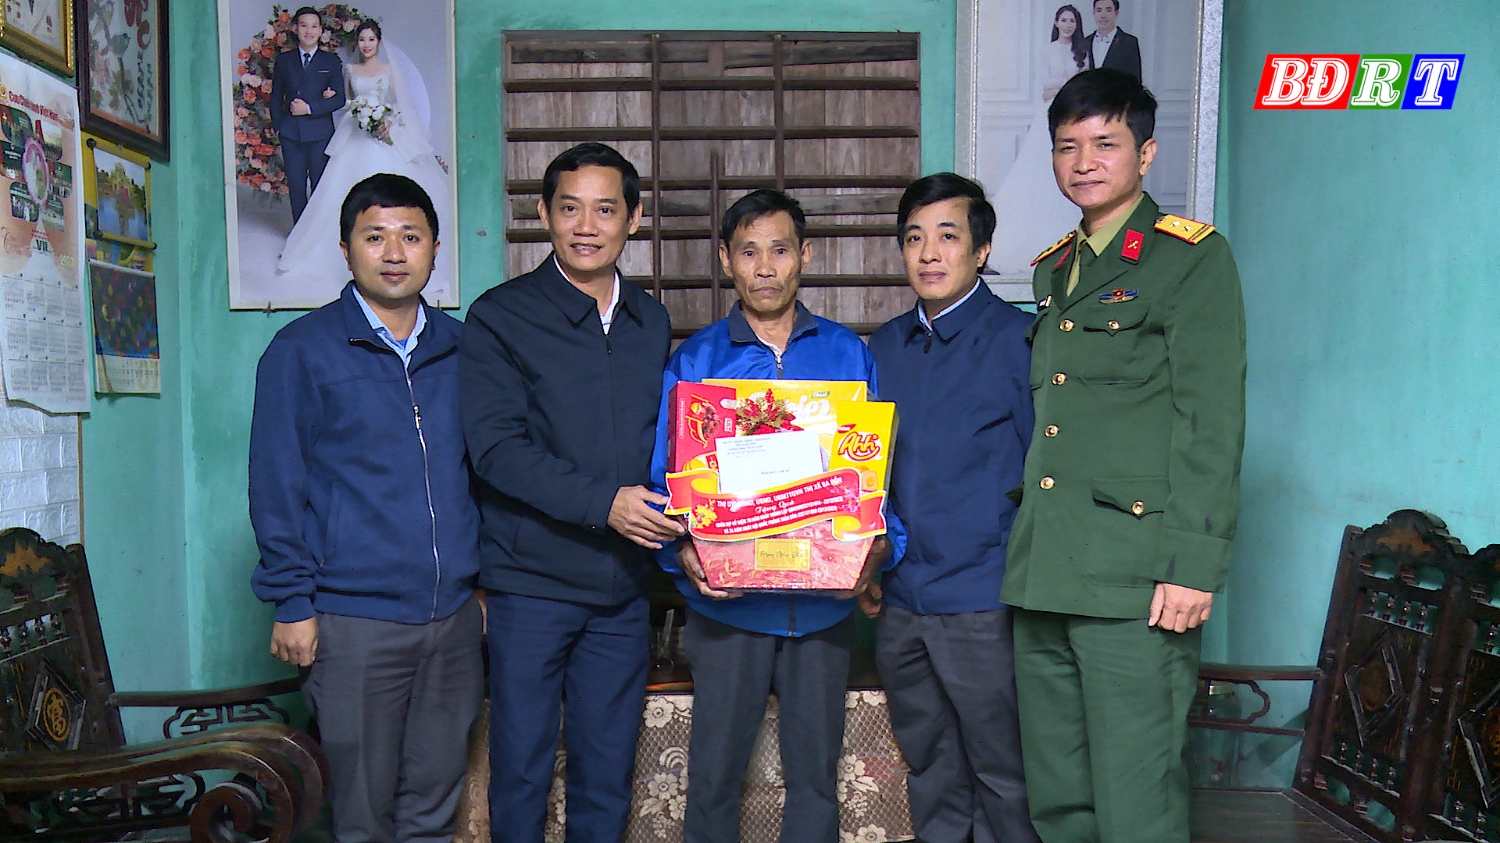 Đồng chí Nguyễn Văn Tình Phó Chủ tịch UBND thị xã Ba Đồn thăm, tặng quà cho ông Trần Ngọc Vinh, Thương binh, TDP Đồng Môn